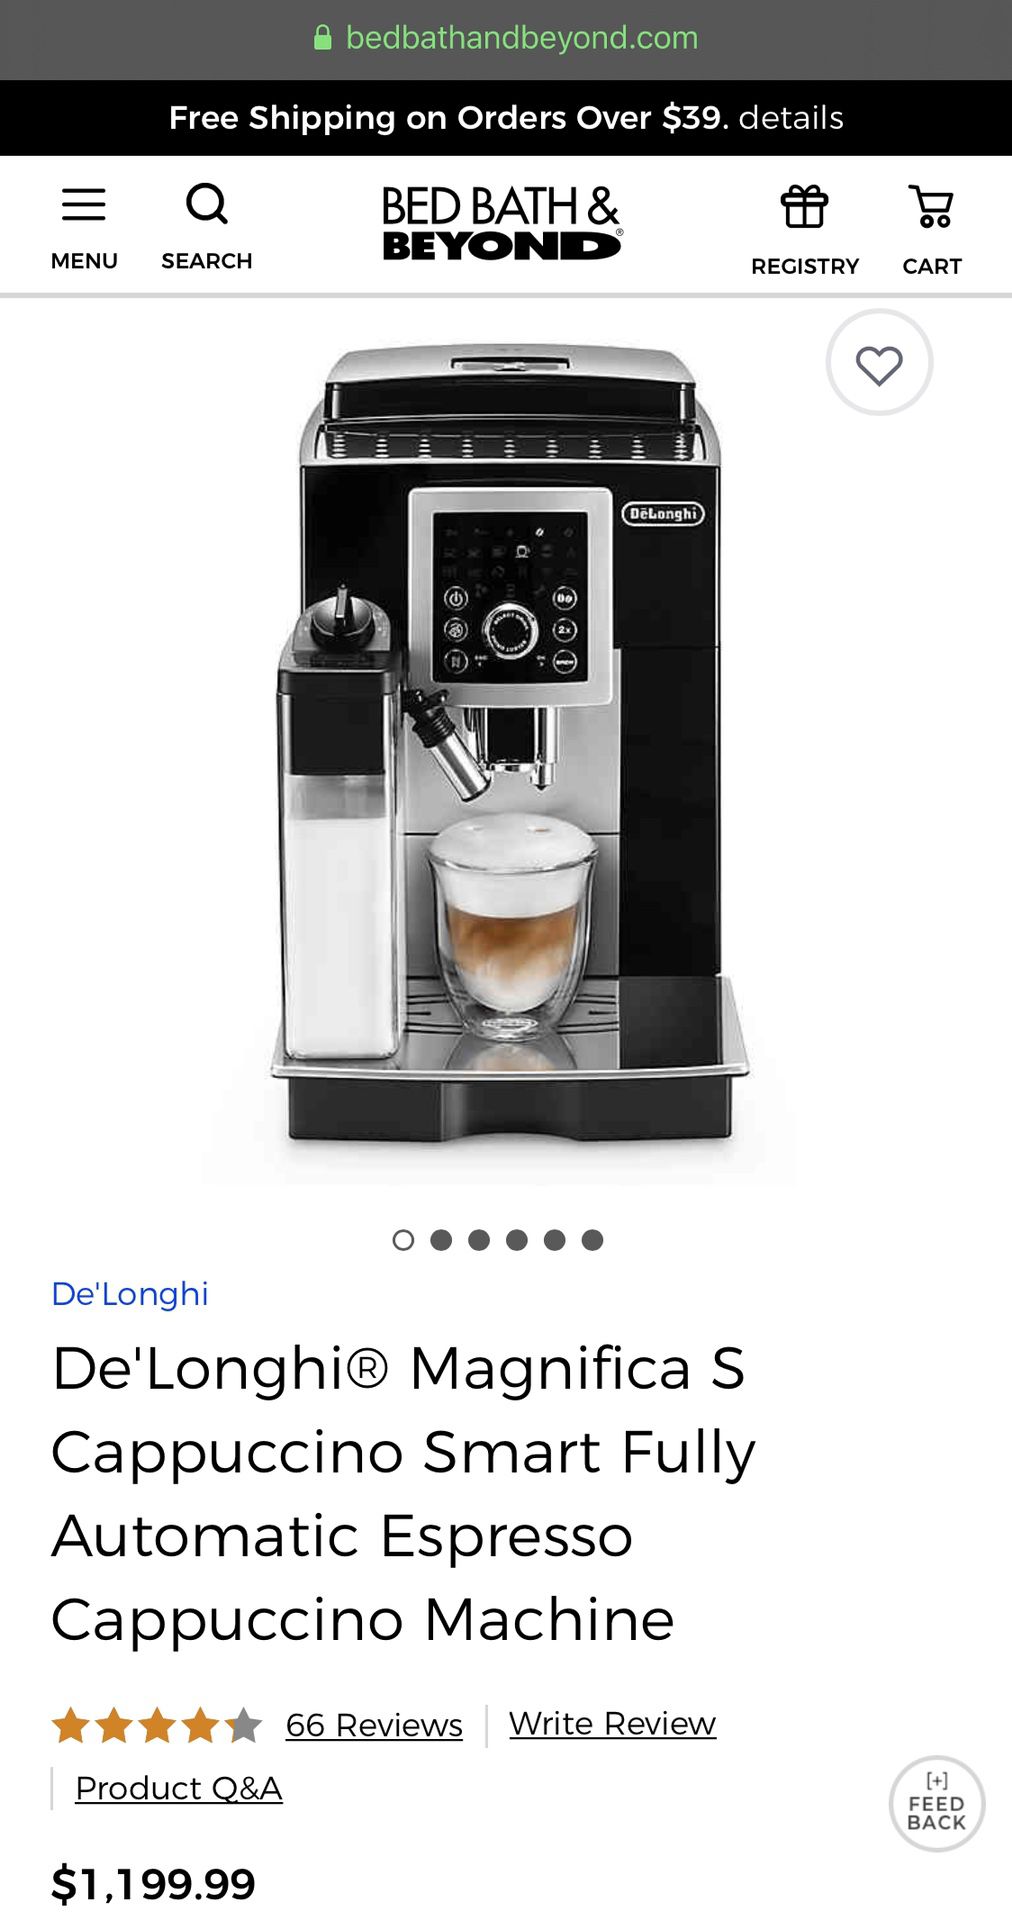 Coffee maker, De’Longhi Magnifica Cappuccino Machine